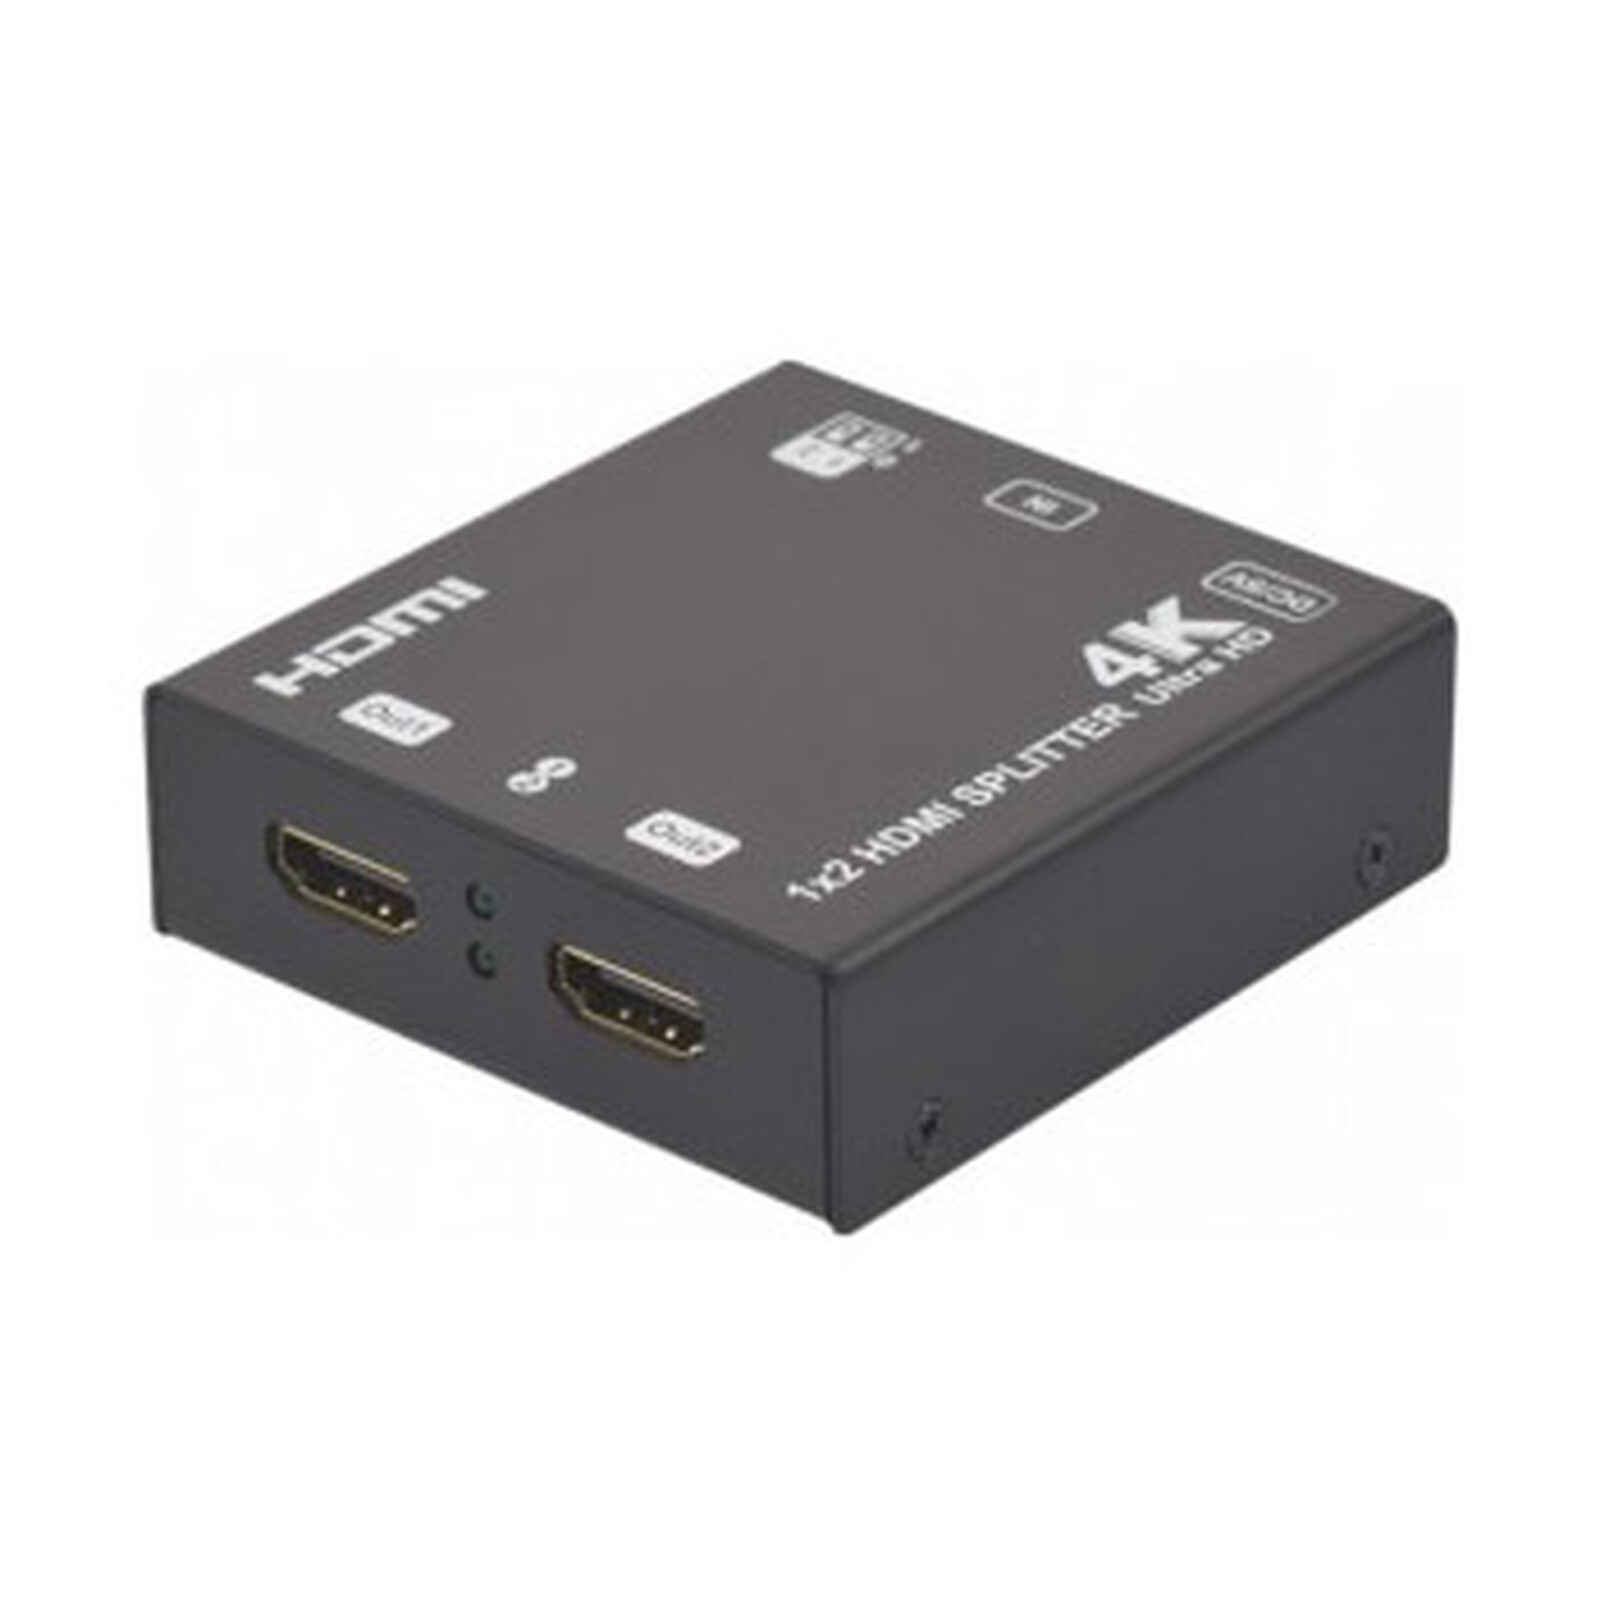 Splitter HDMI 2.0 4K 1x2 (1 entrée, 2 sorties) - Commutateur HDMI